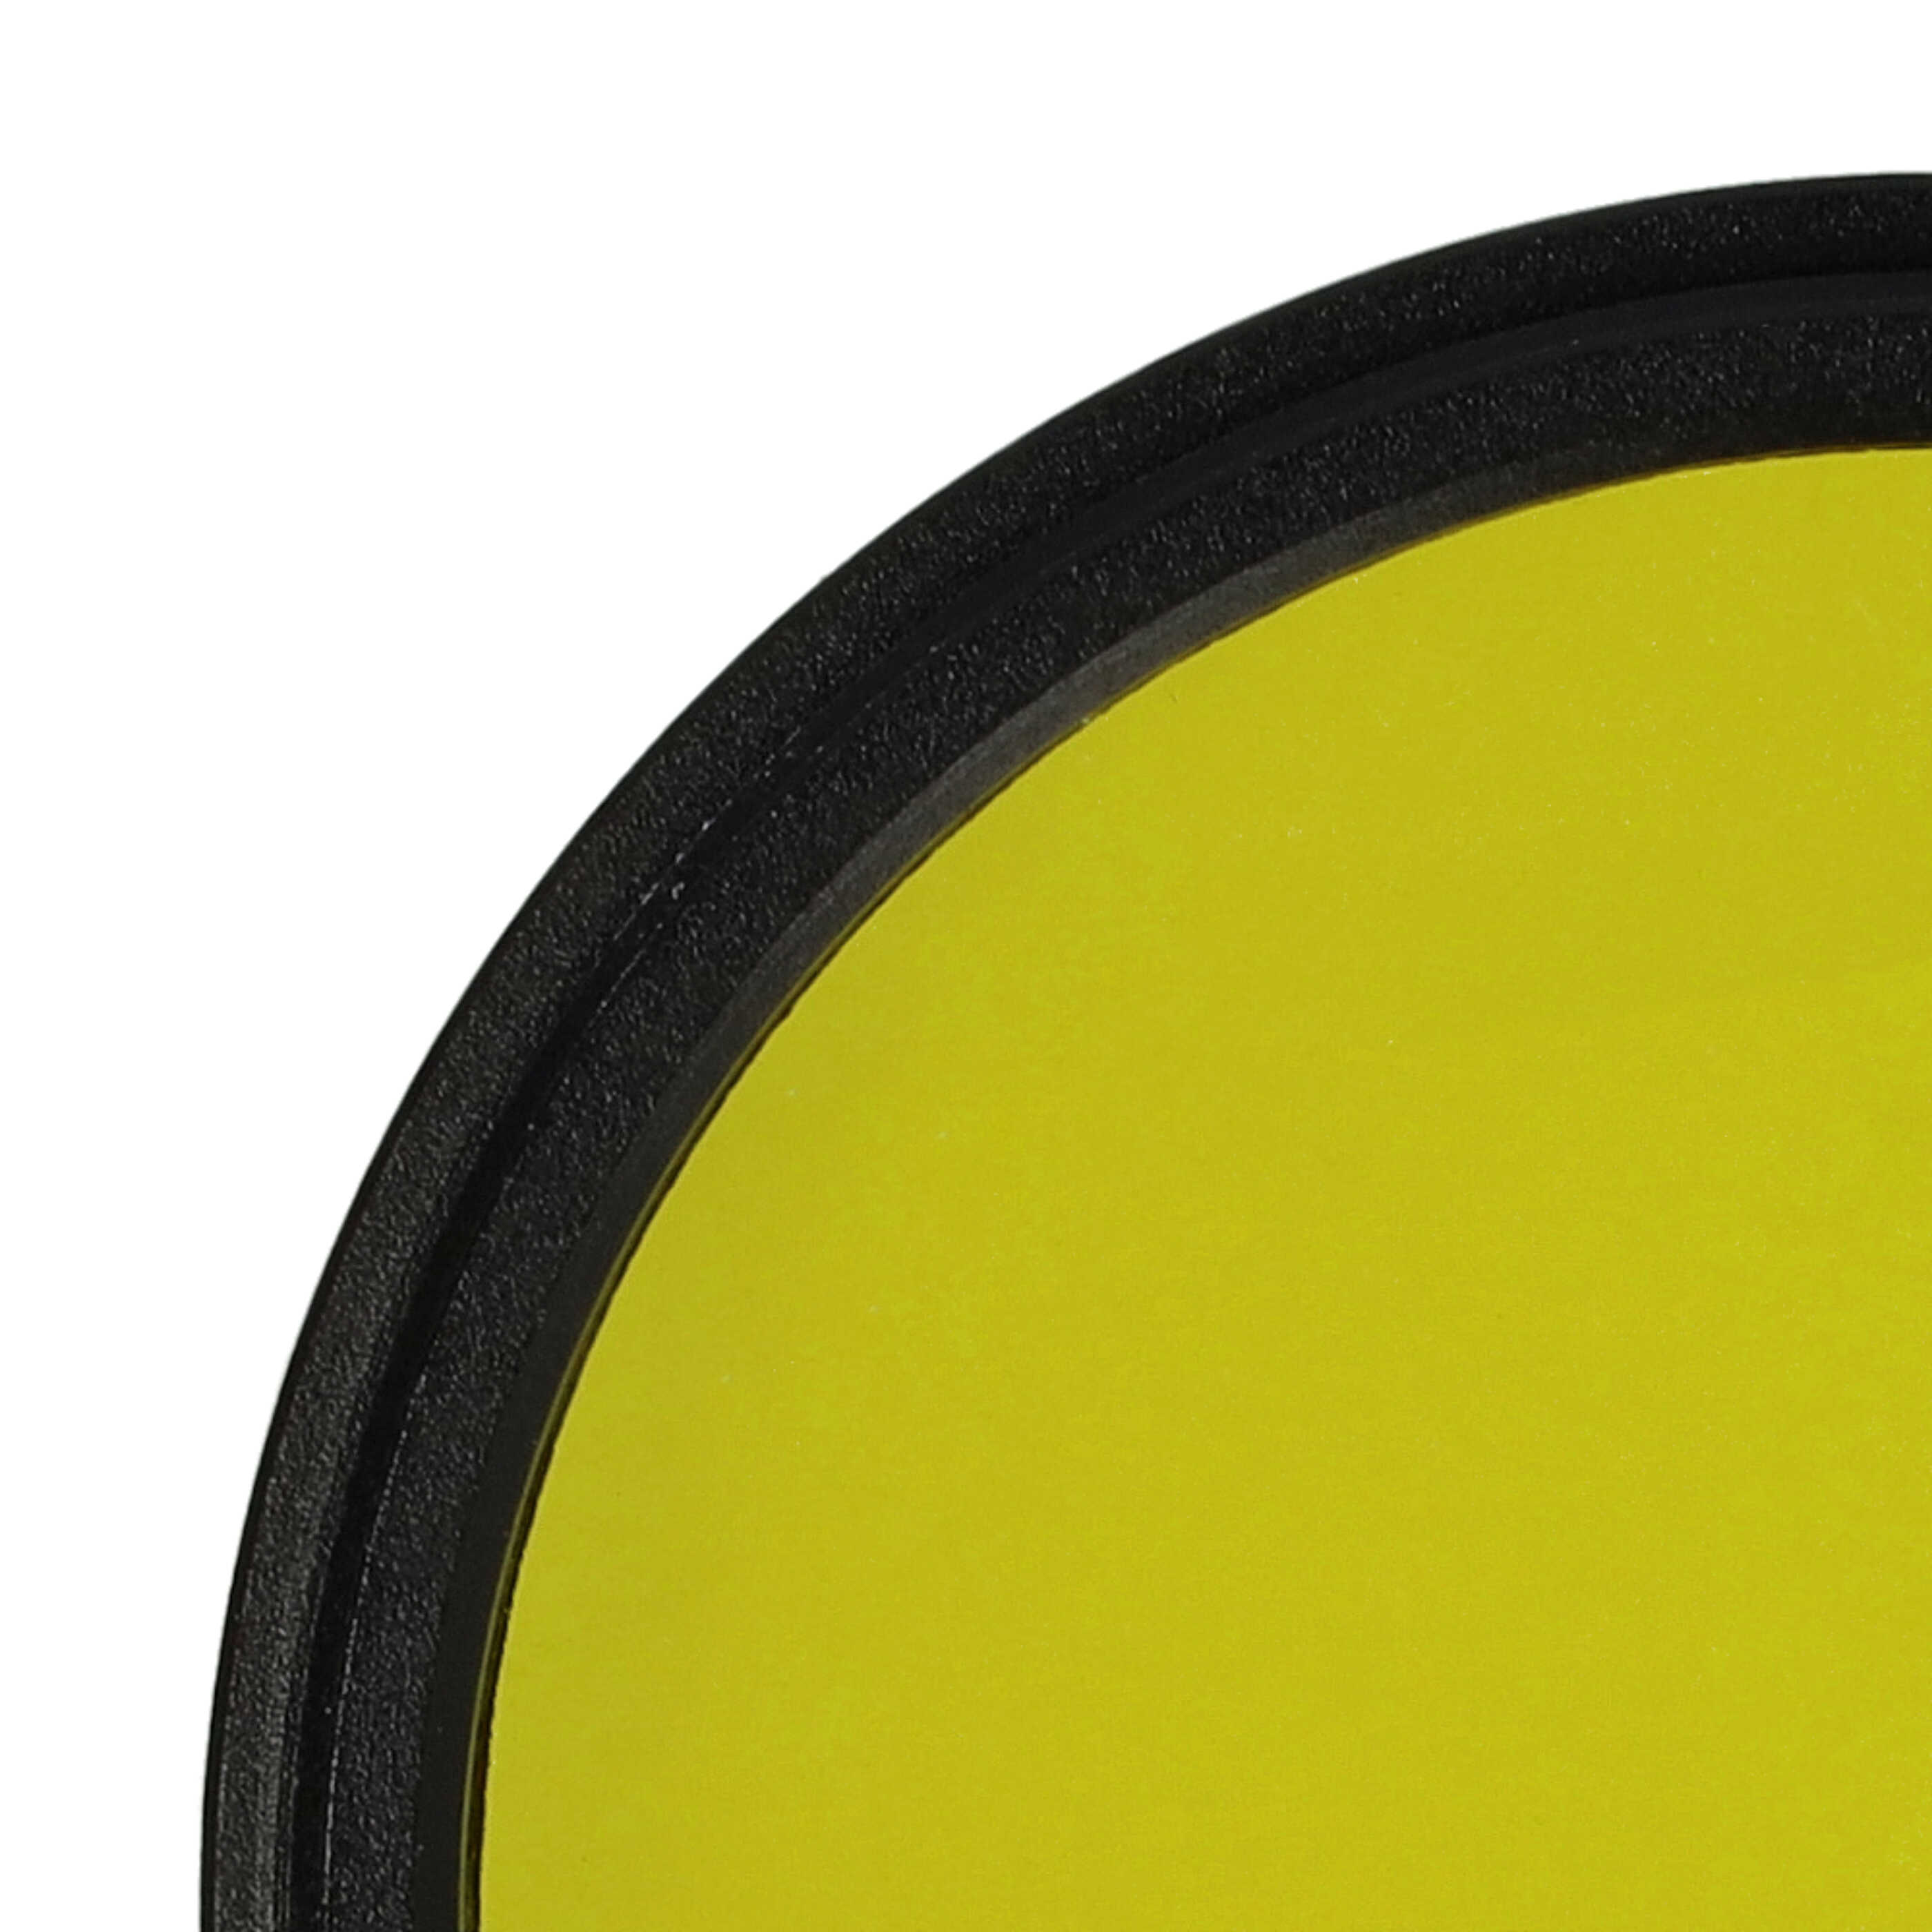 Farbfilter gelb passend für Kamera Objektive mit 43 mm Filtergewinde - Gelbfilter